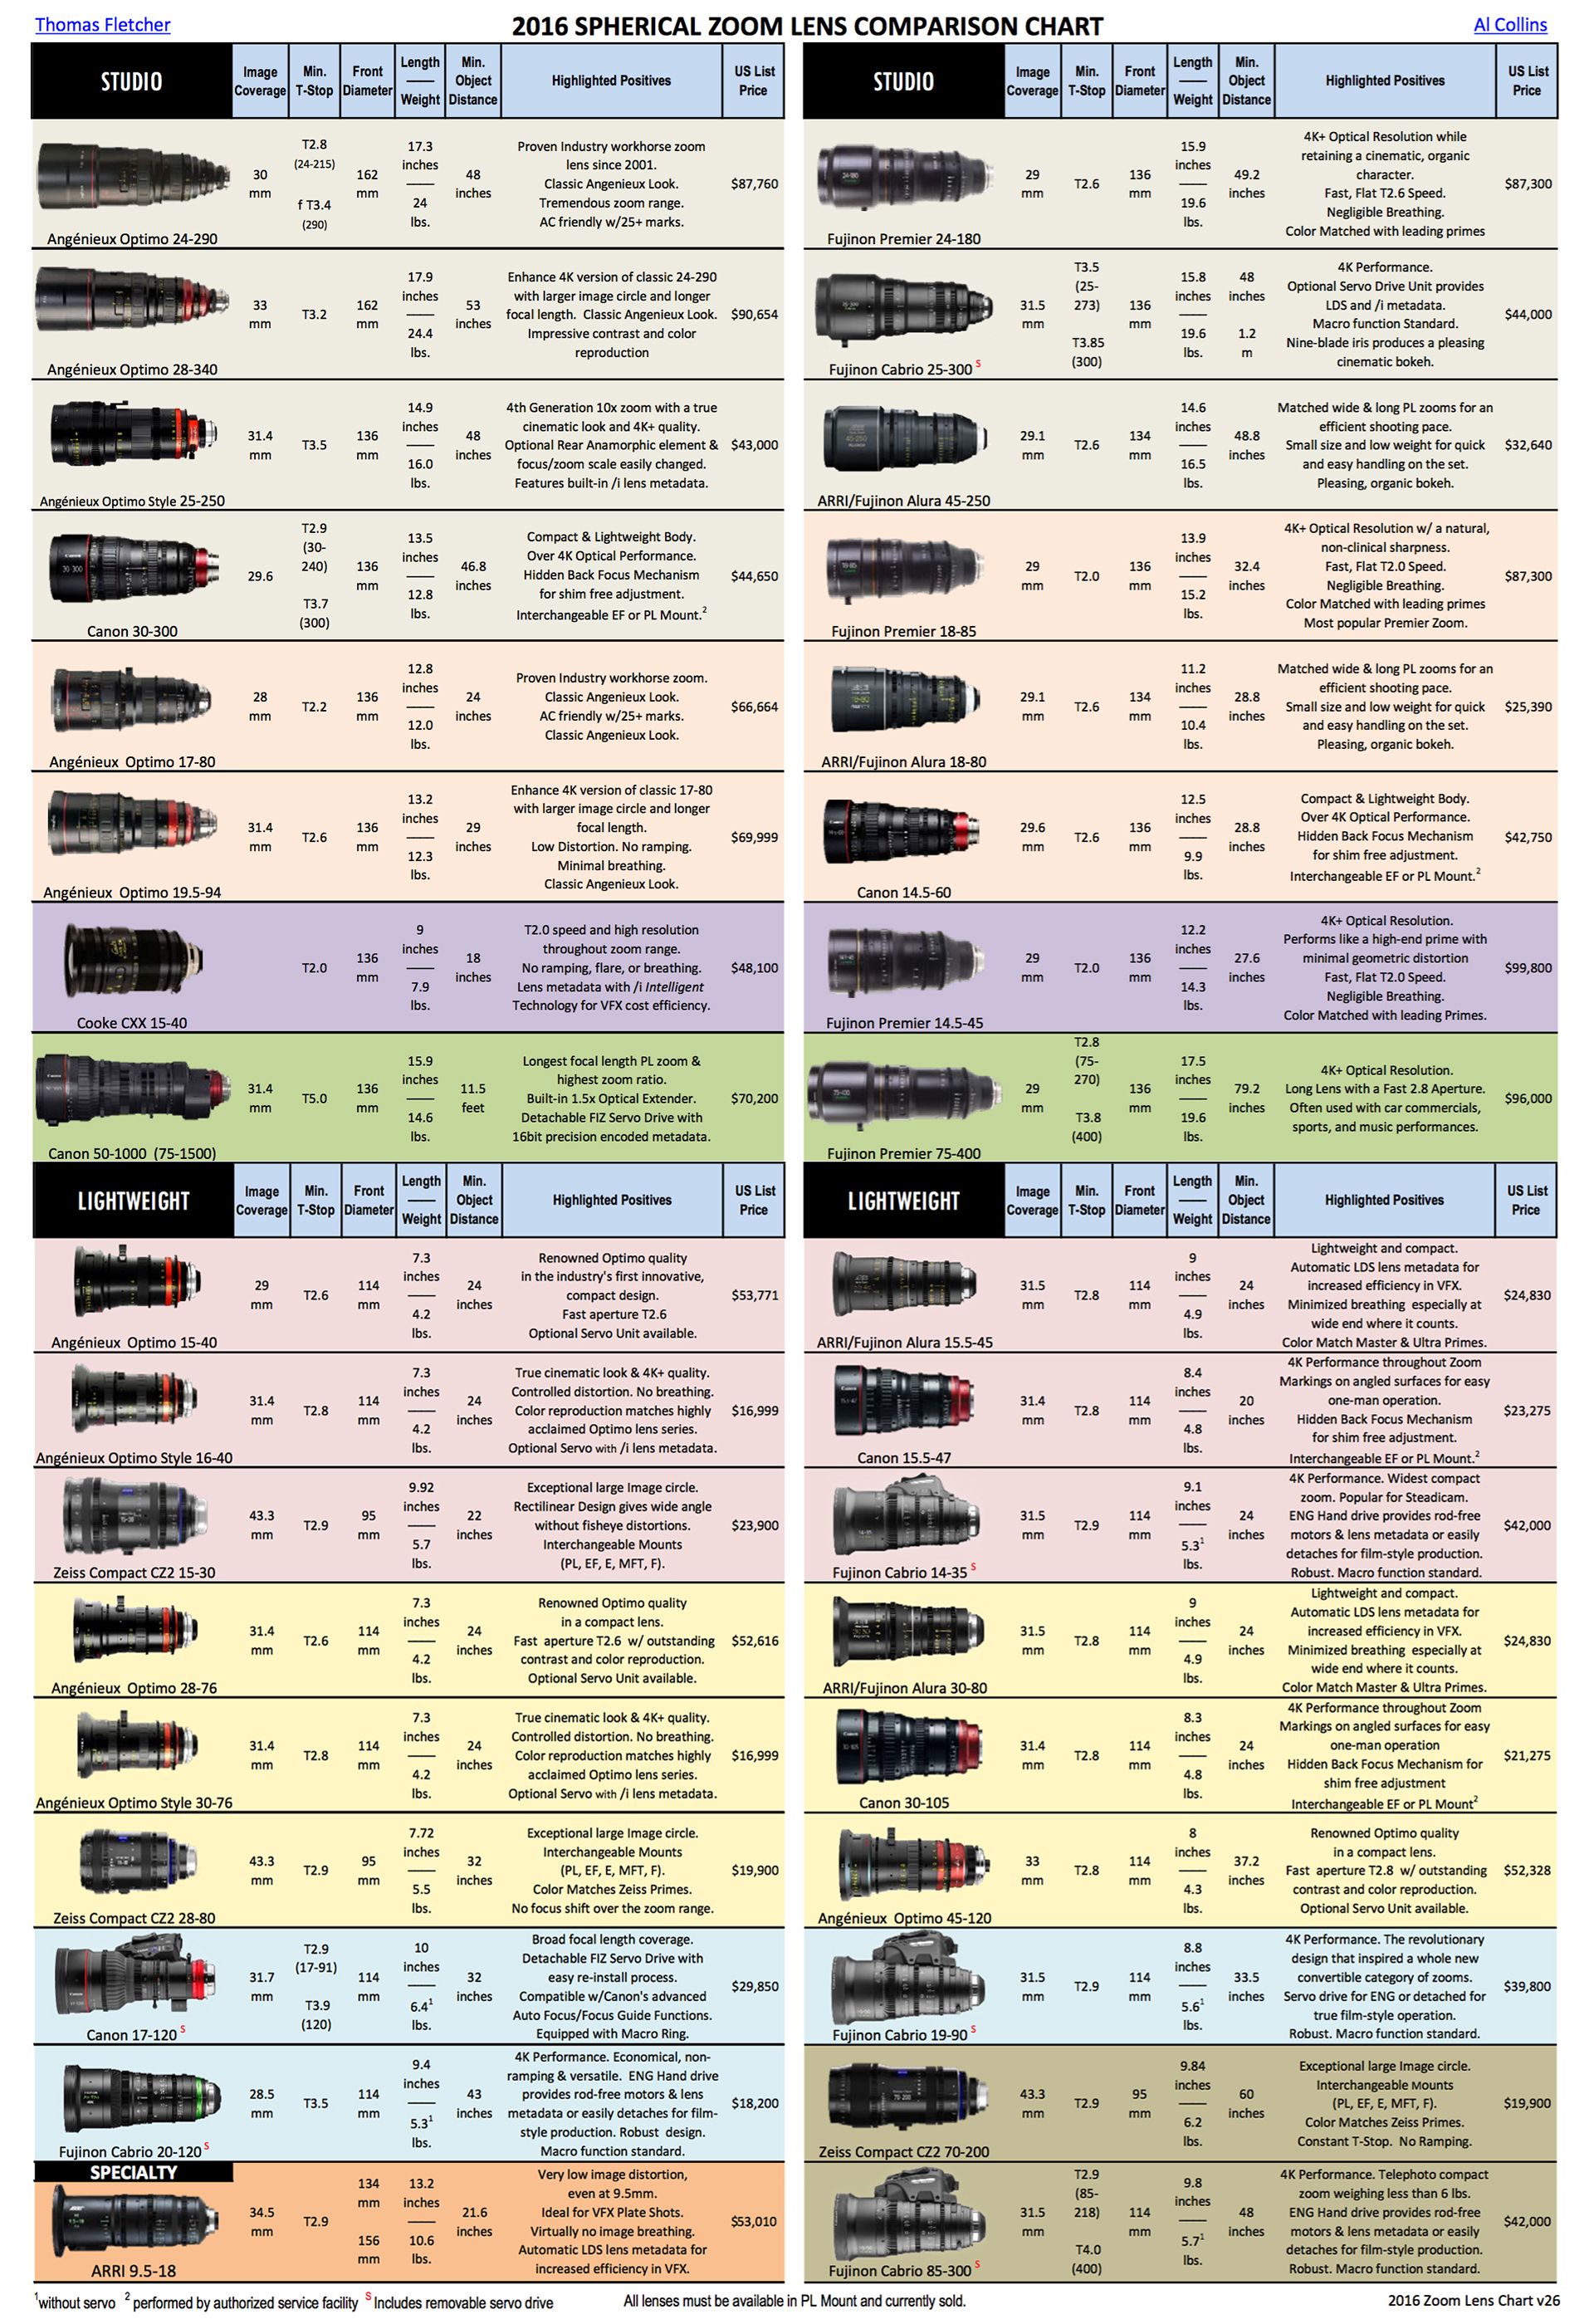 Canon And Nikon Comparison Chart